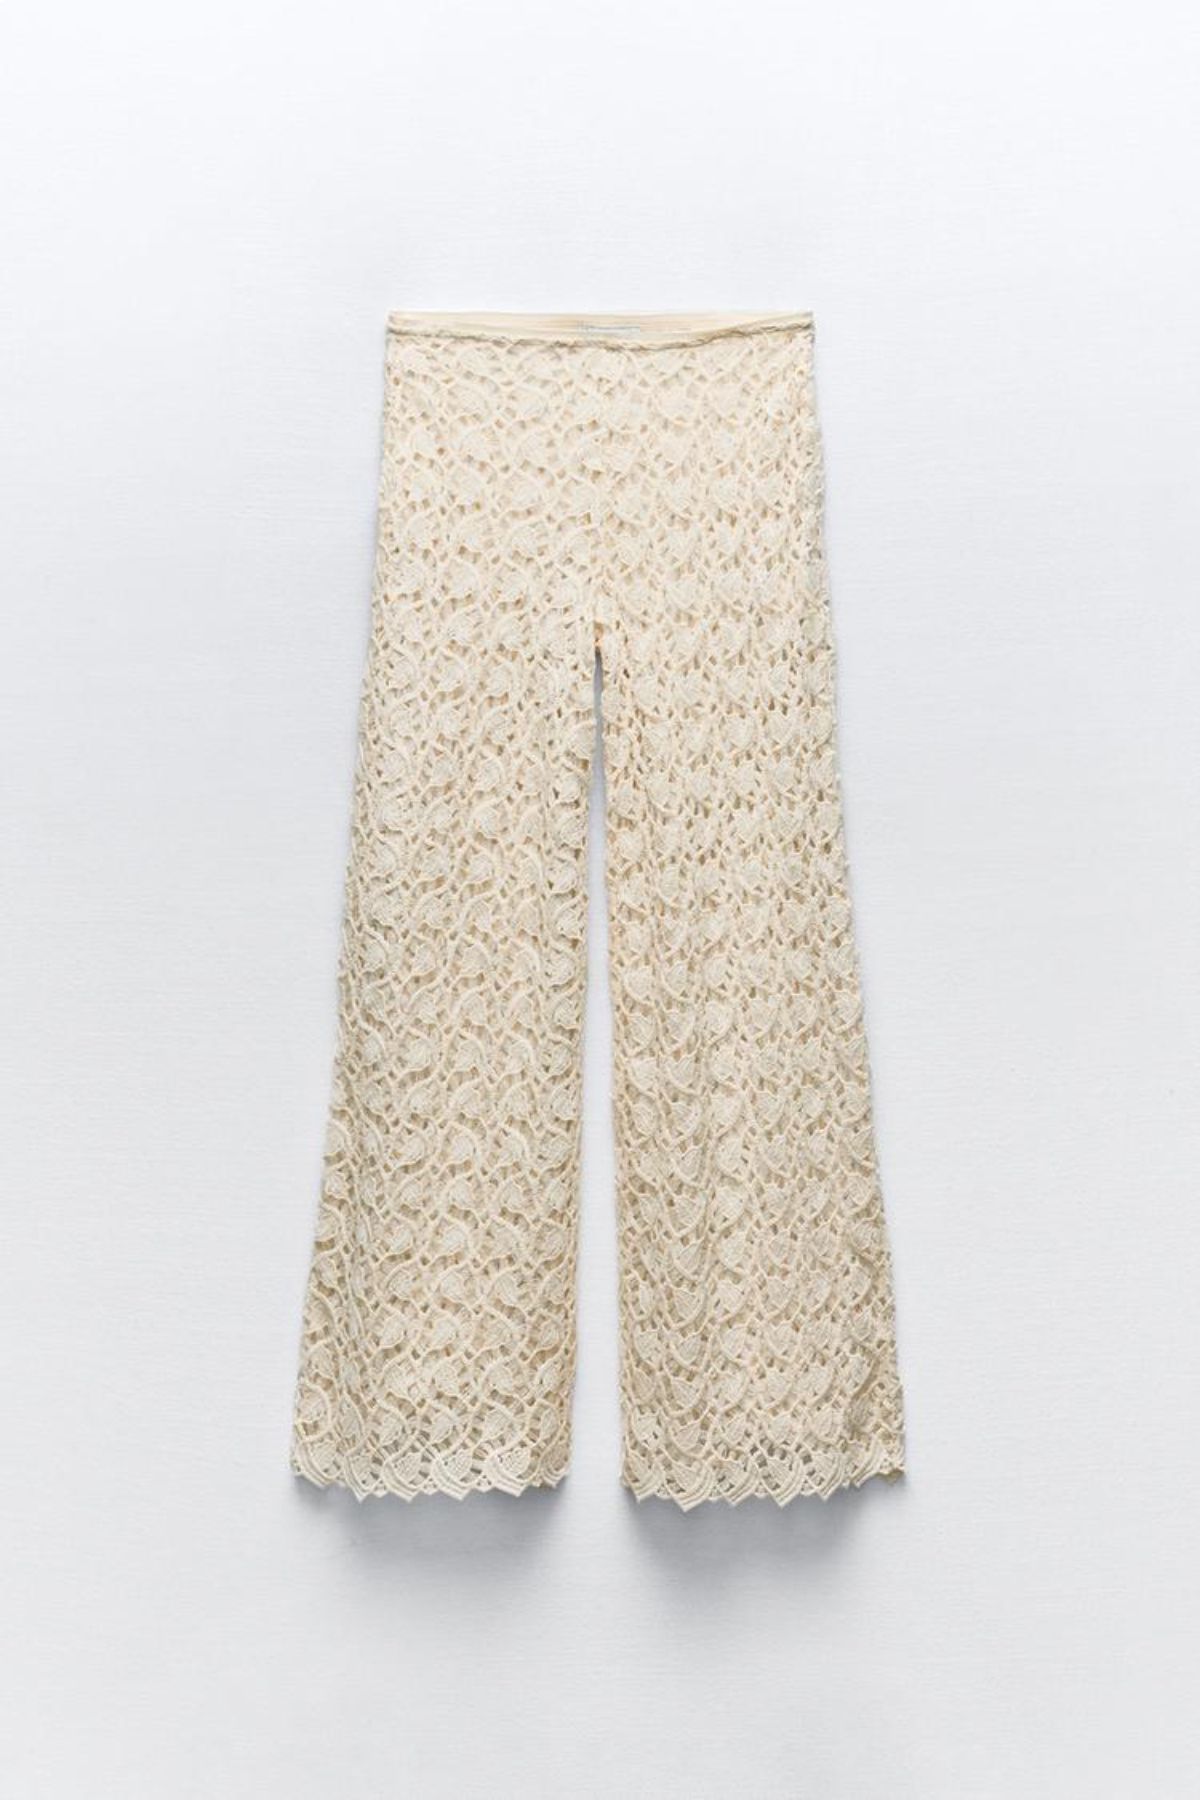 Pantalón crochet de Zara